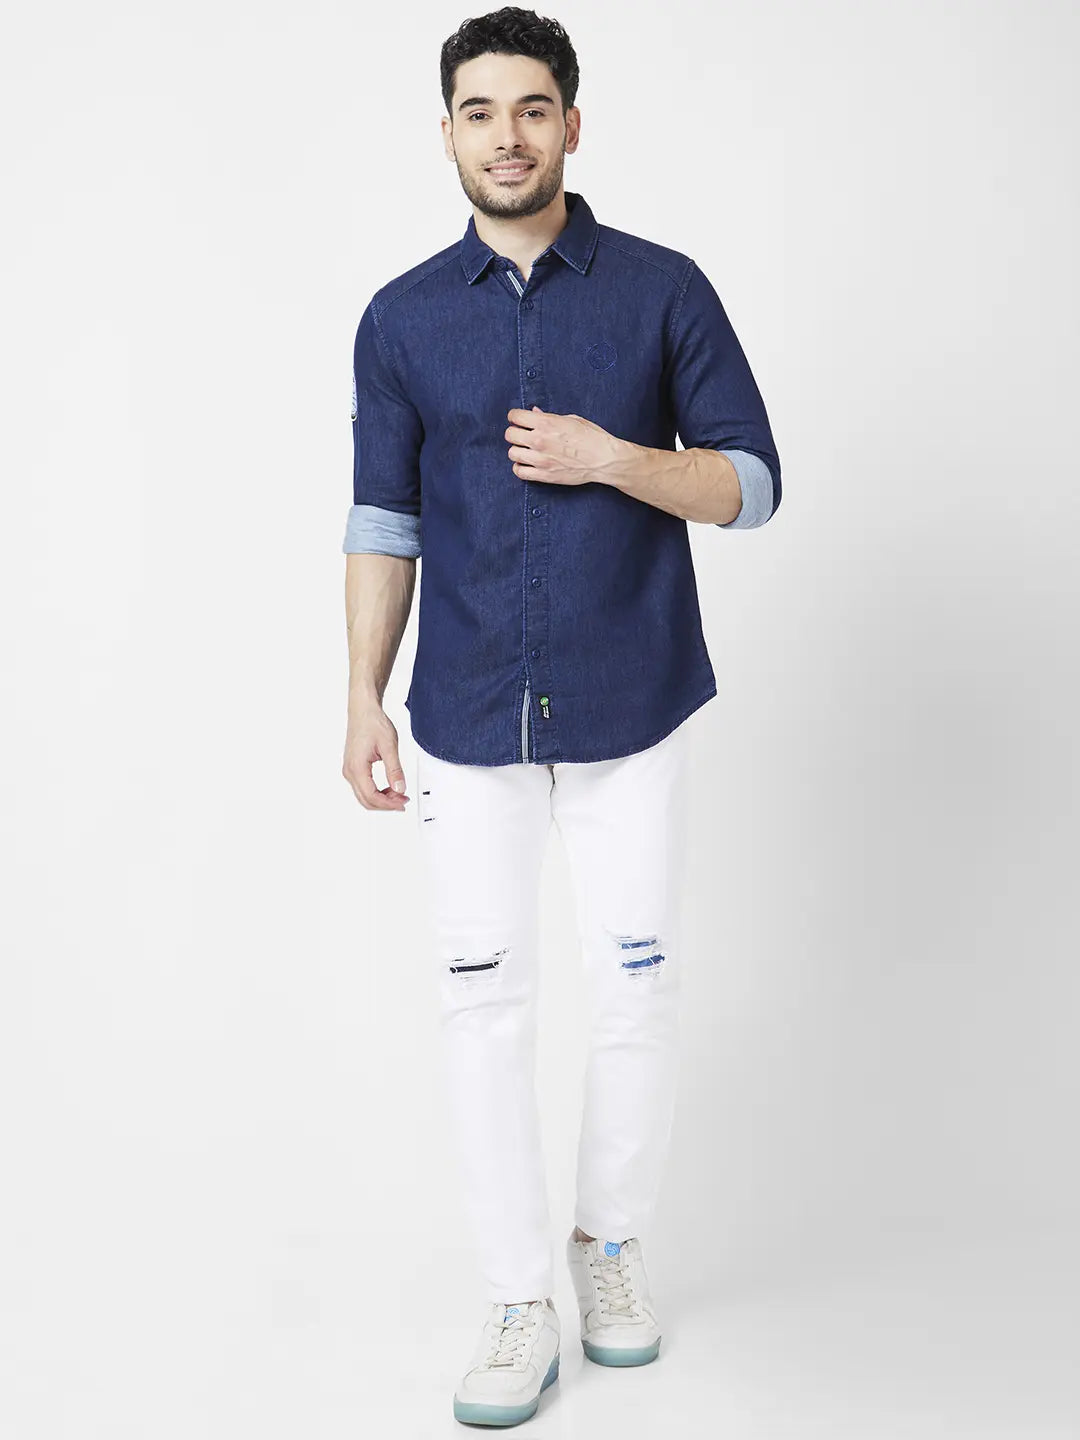 Denim blue shirt Combination pants | Men's denim style, Blue shirt  combination, Combination pants